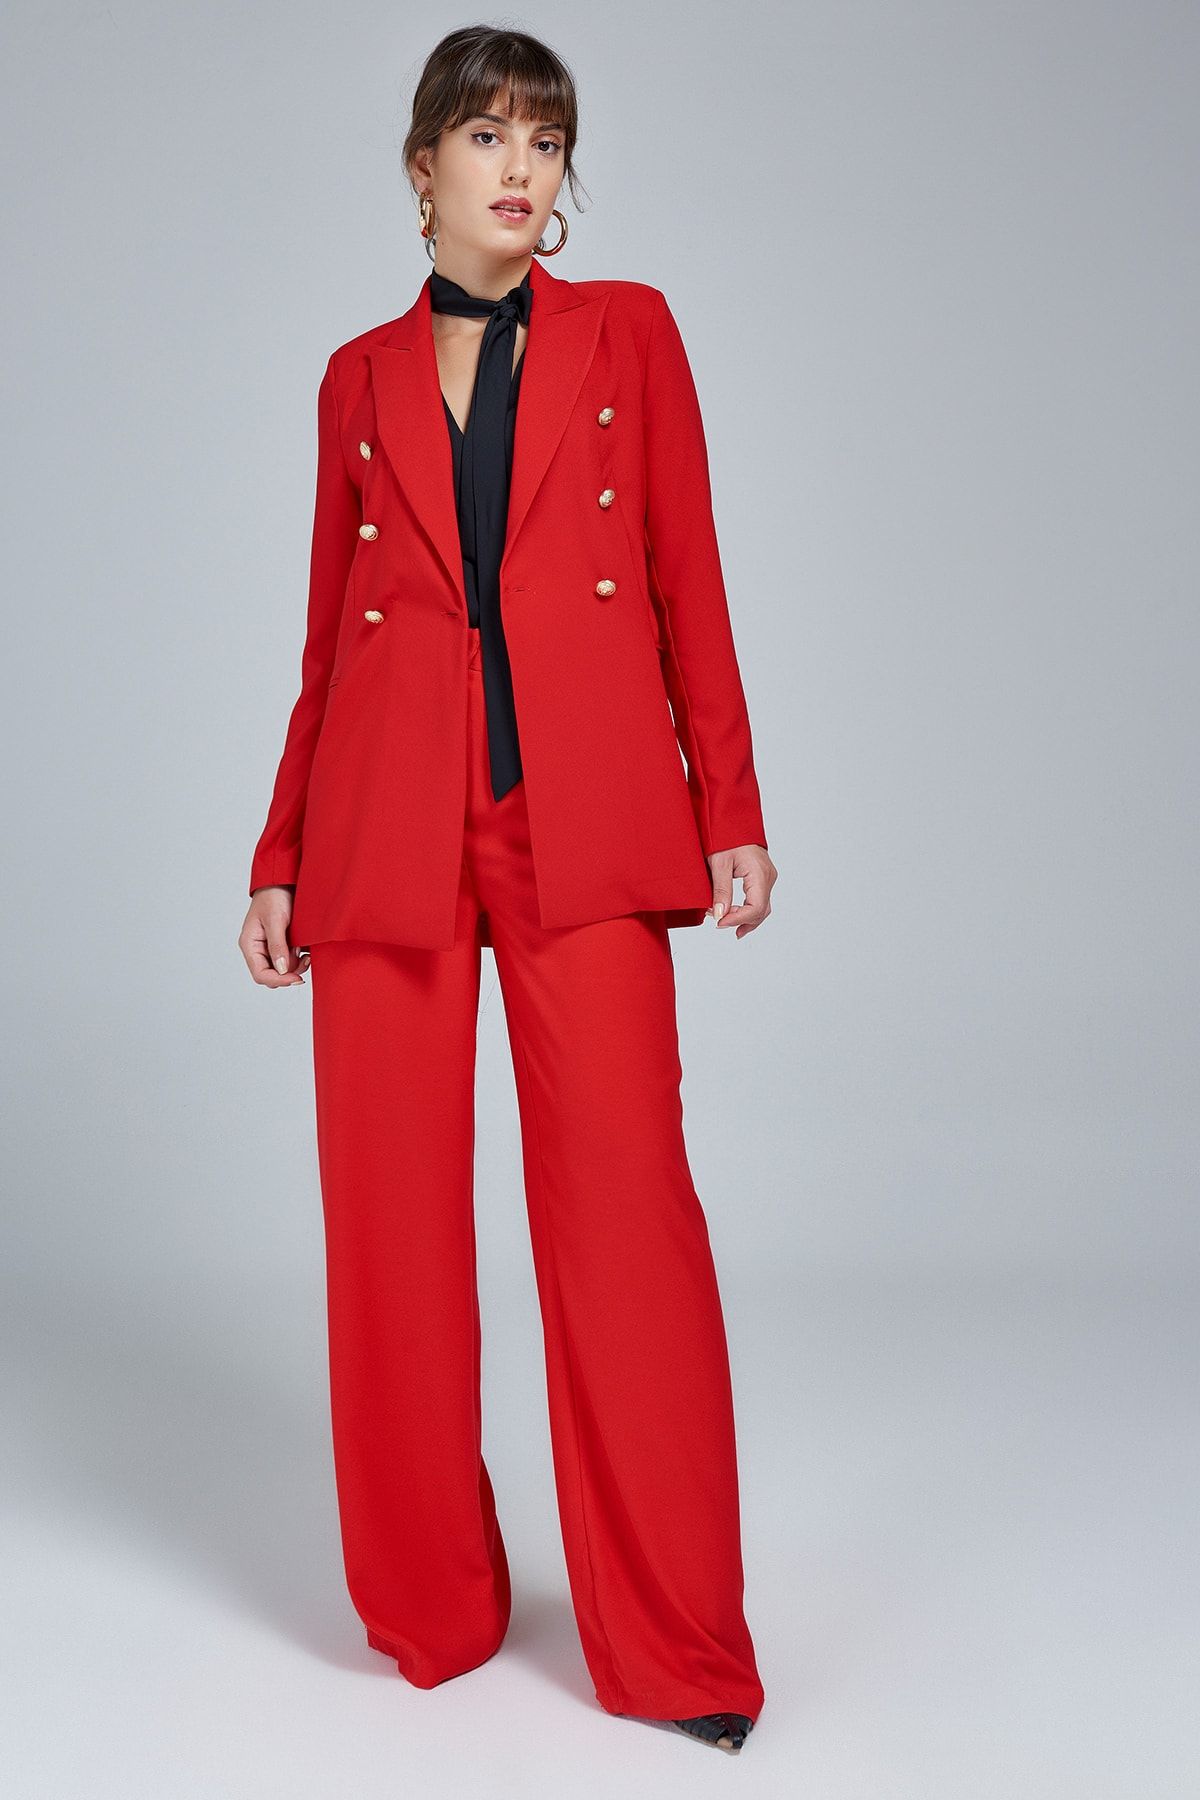 Appleline Kadın Kırmızı Blazer Ceket